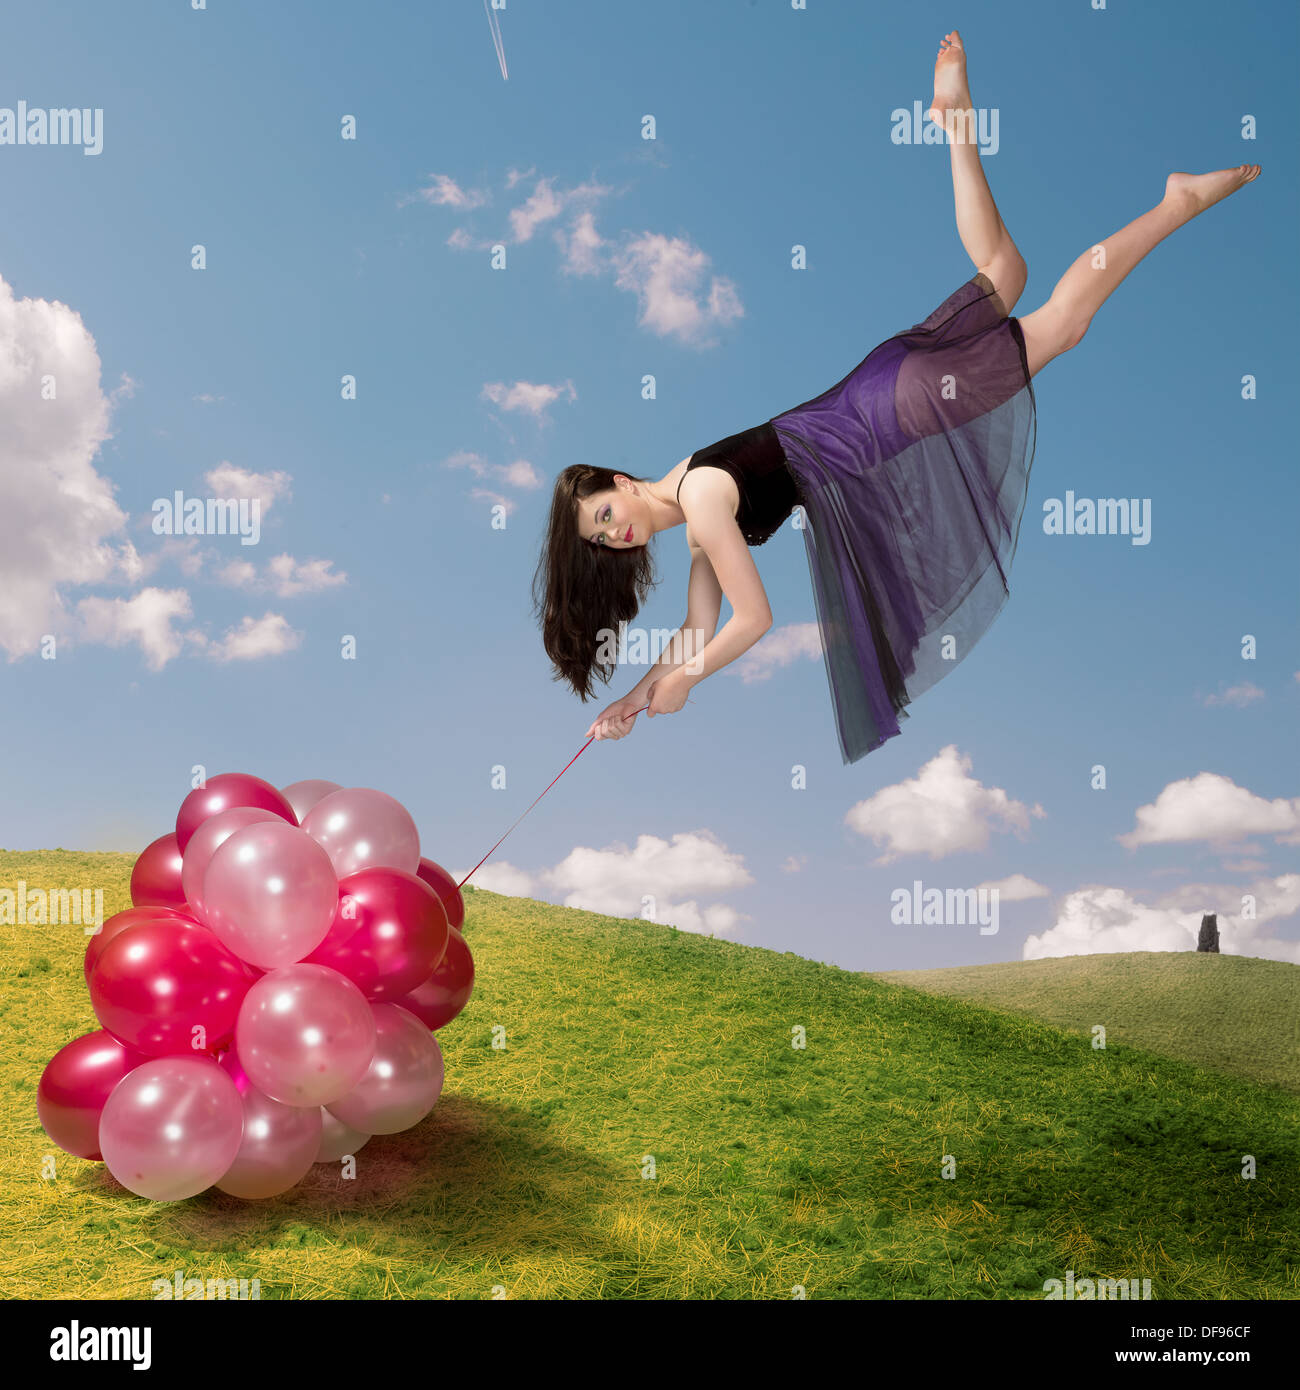 Flying ragazza con palloncini colorati Foto Stock